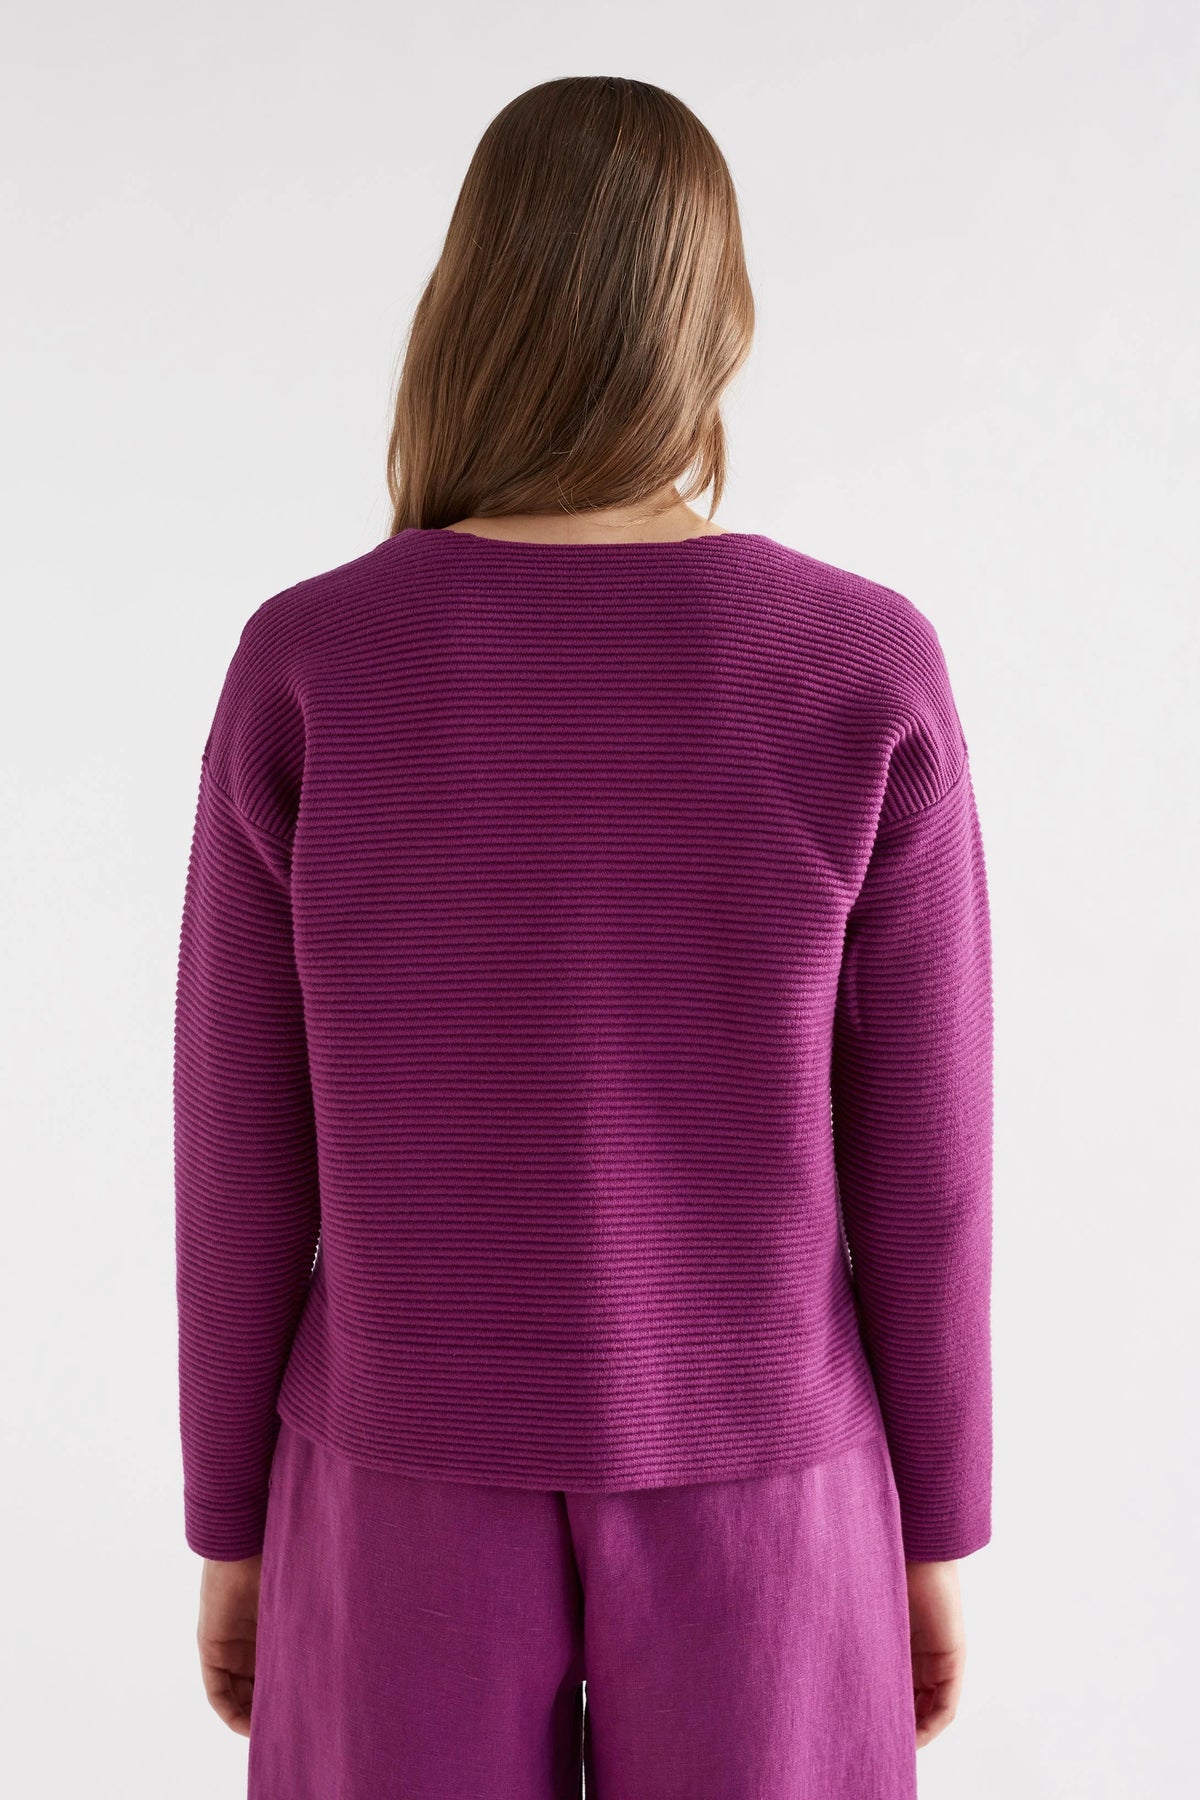 ELK | Neiu Ottoman Sweater - Magenta